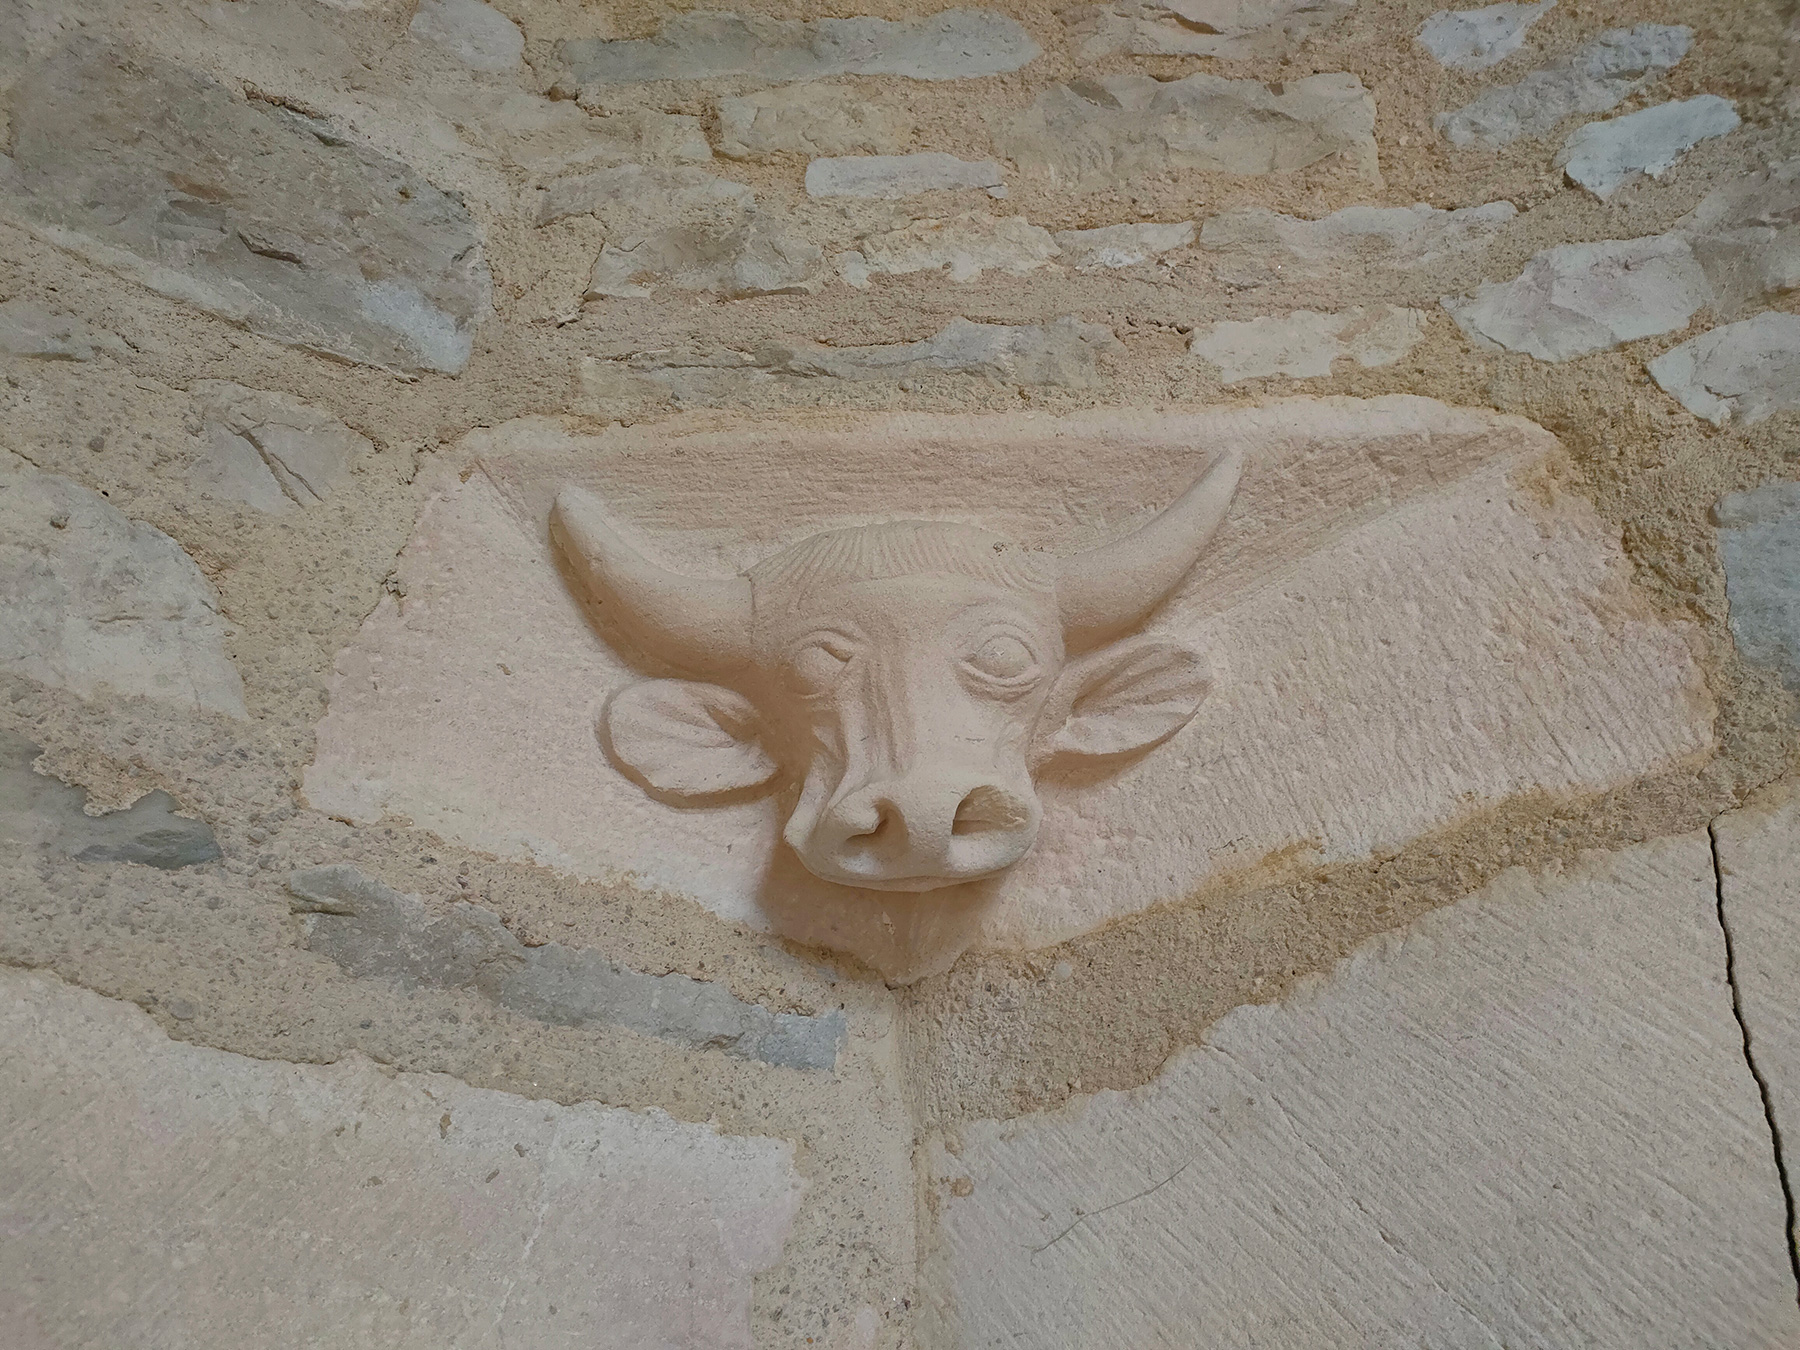 Sculpted bull's head, Galerie Jean-Marie Périer